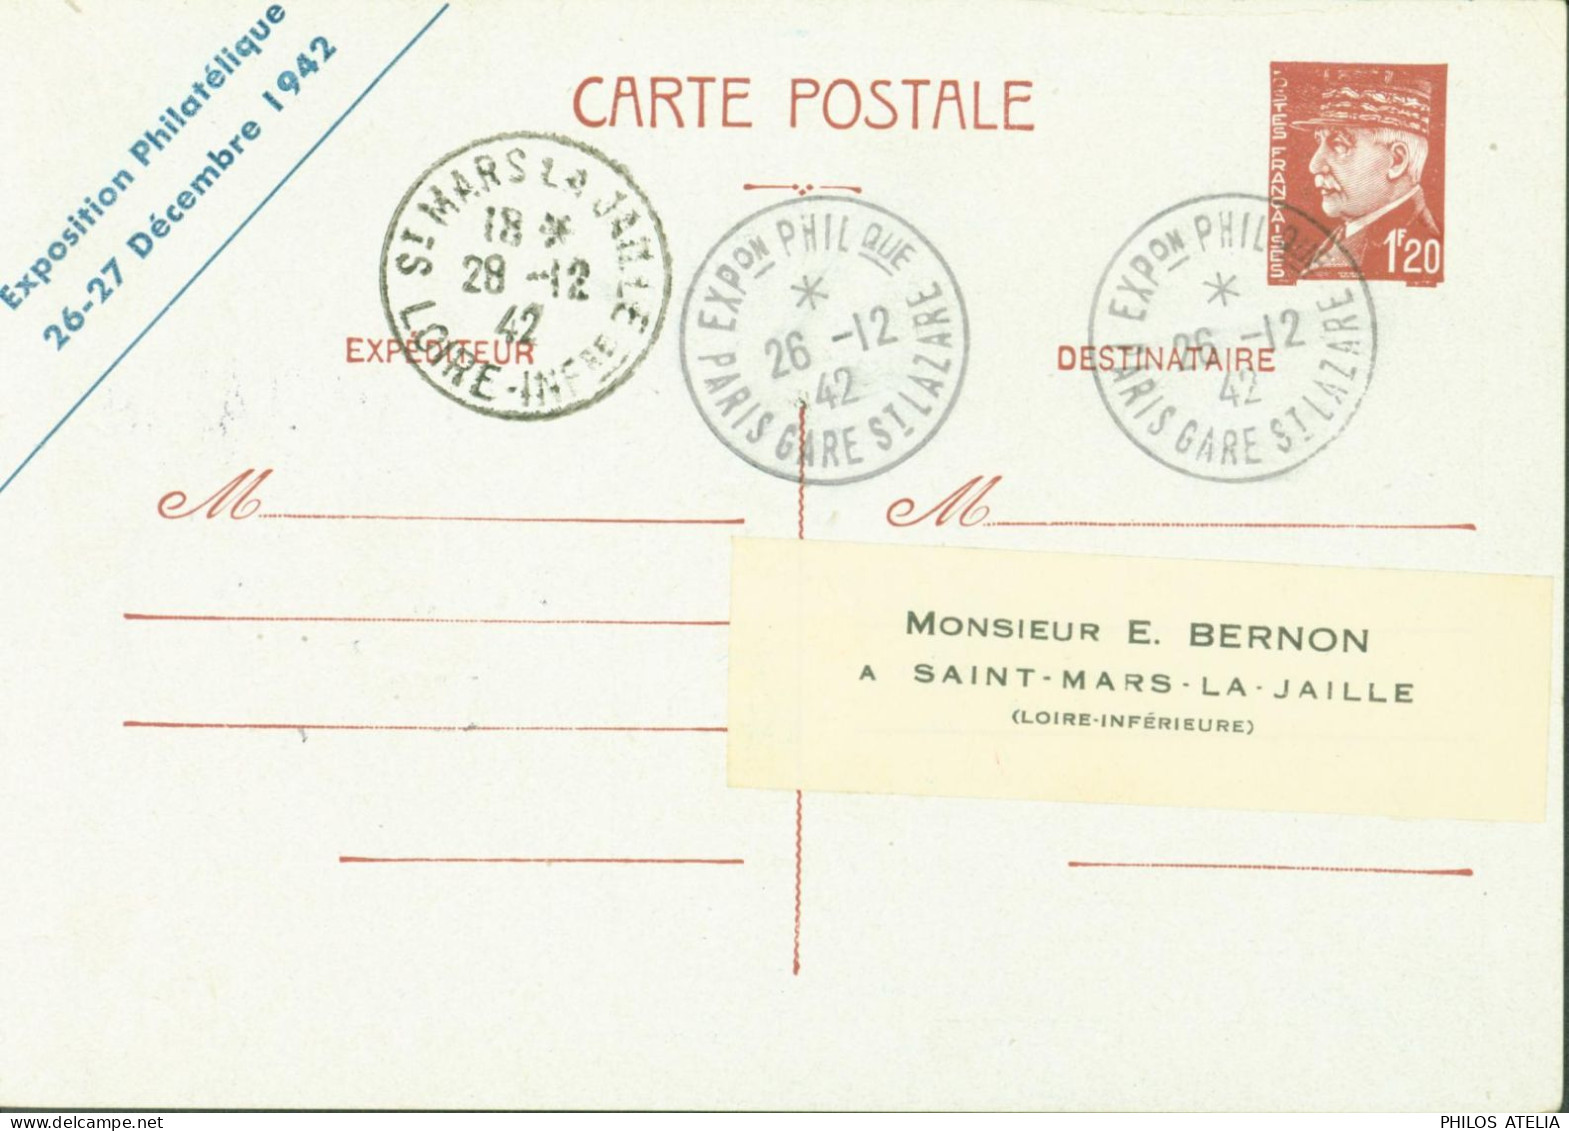 Entier Pétain 1,20 CP Repiquage Exposition Philatélique 26 27 12 1942 Les Cheminots Philatélistes YT Colis Postal 187a - Overprinter Postcards (before 1995)